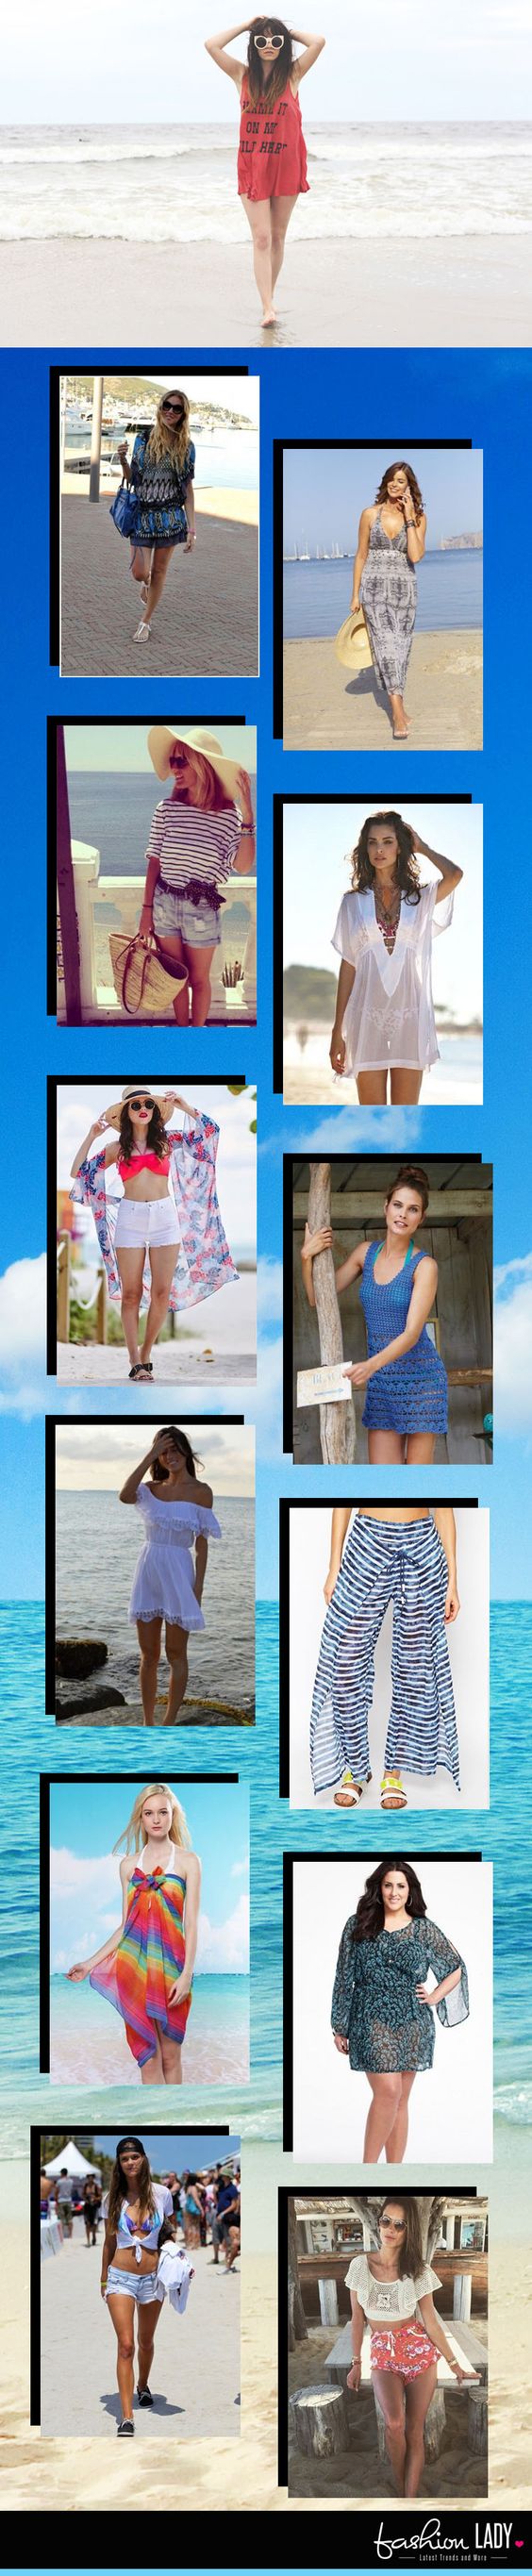 Beste Strand-Outfit-Ideen: Mit Strandkleidern, Accessoires und mehr verpackt